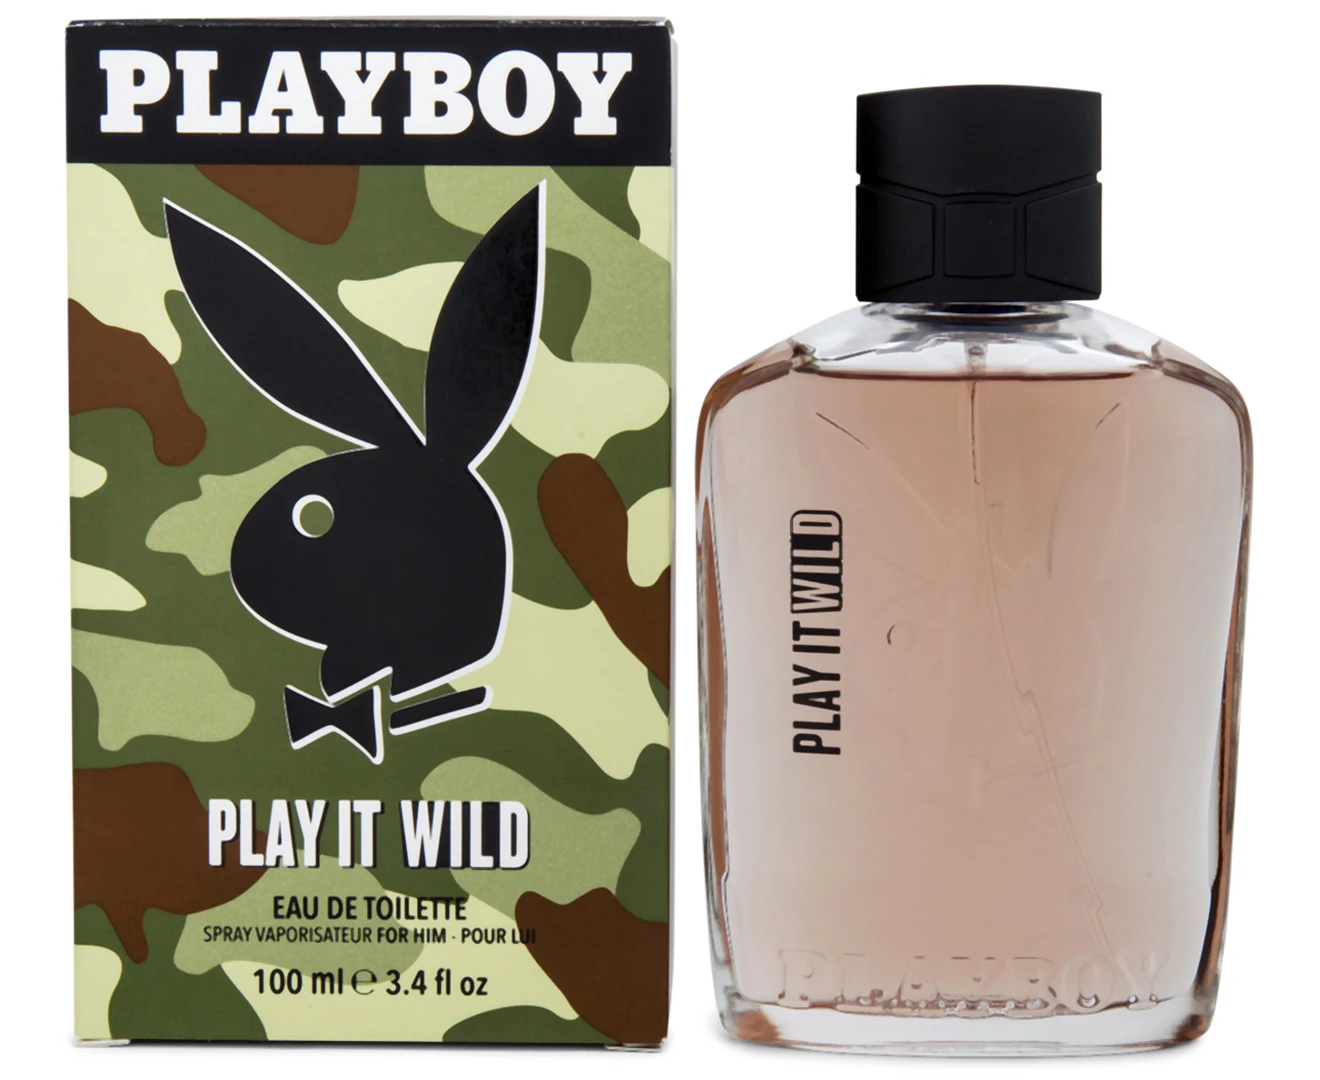 Playboy Varsity Style Microfiber Blend Women's PSD Boy Shorts